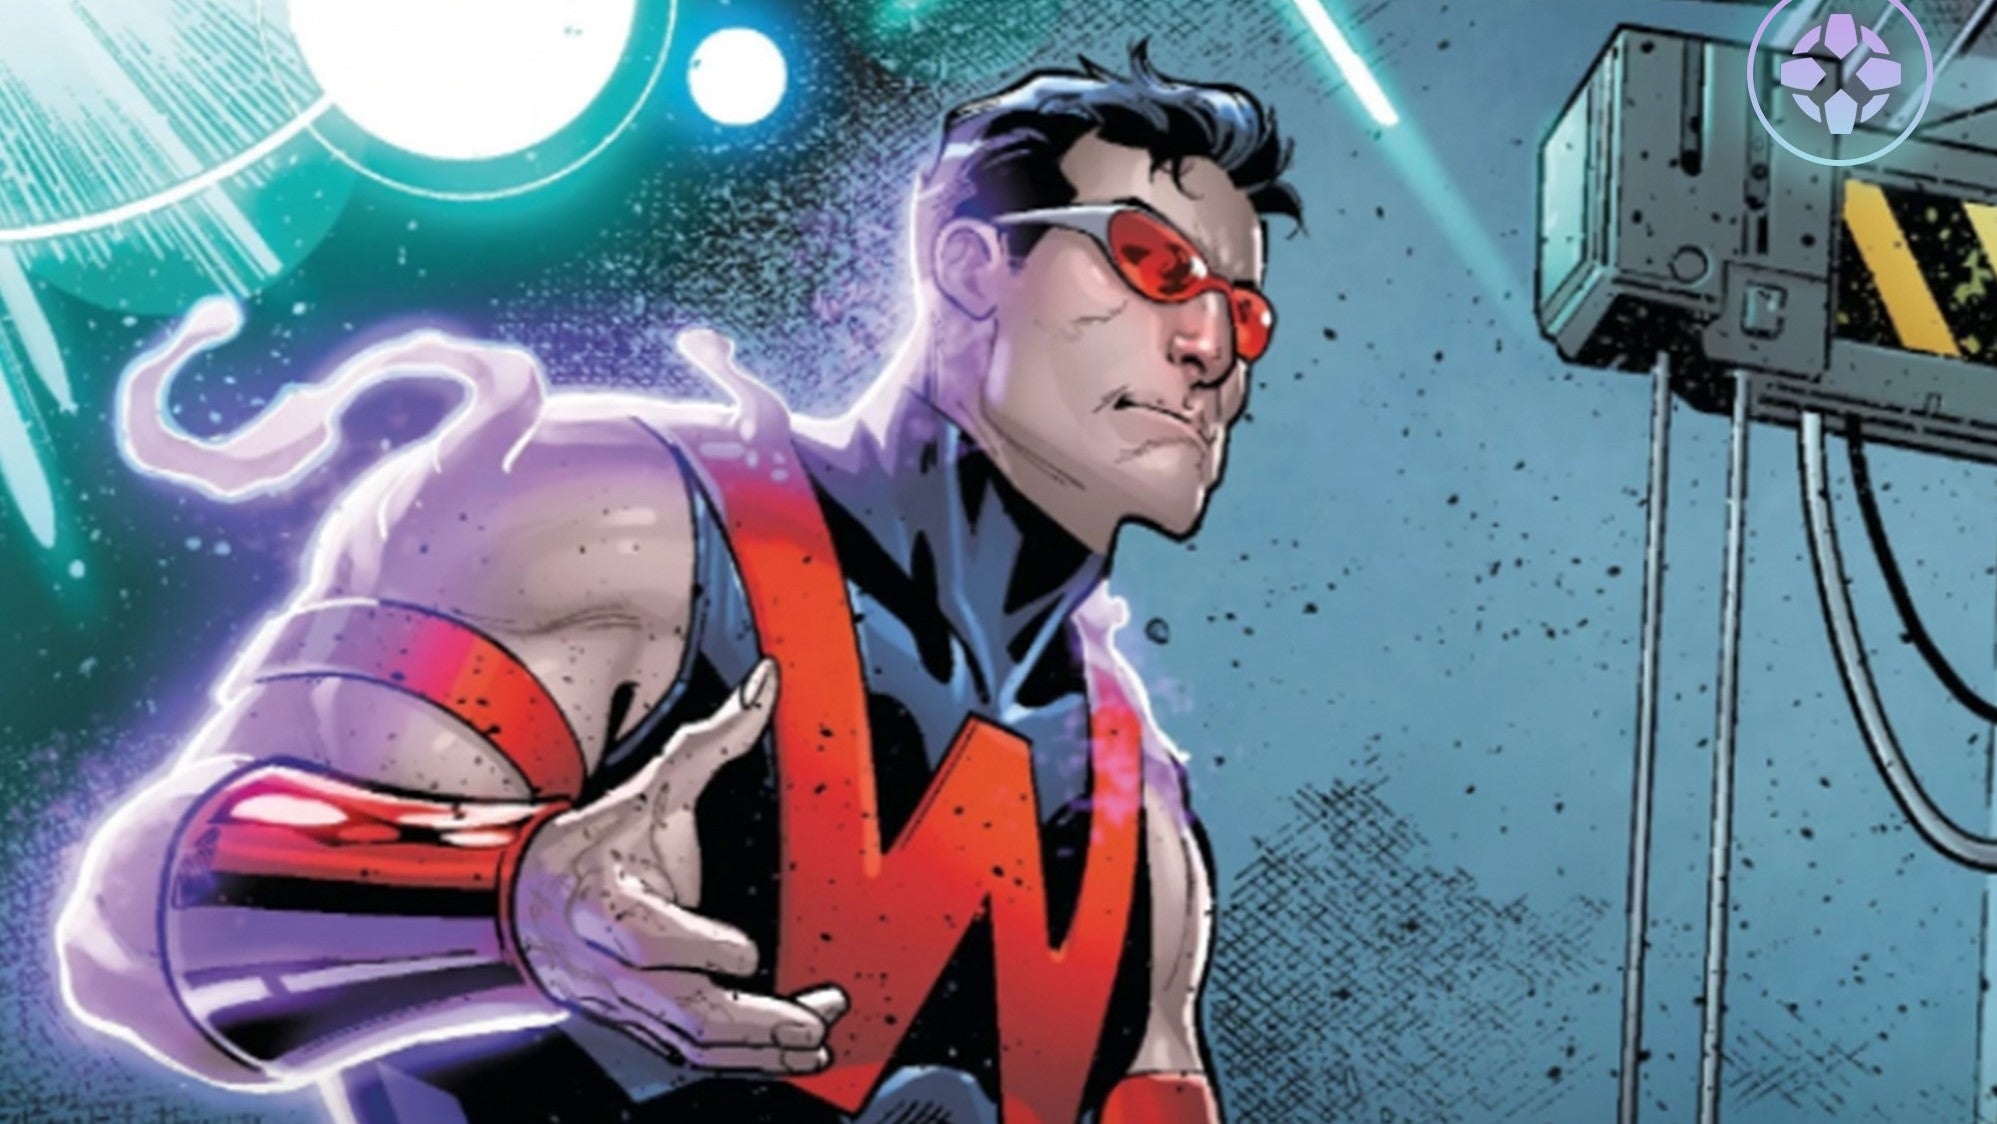 Universo Marvel 616: Ryan Reynolds resume Deadpool 3 como um saída do  Universo 'Auxiliar' da Marvel para o UCM